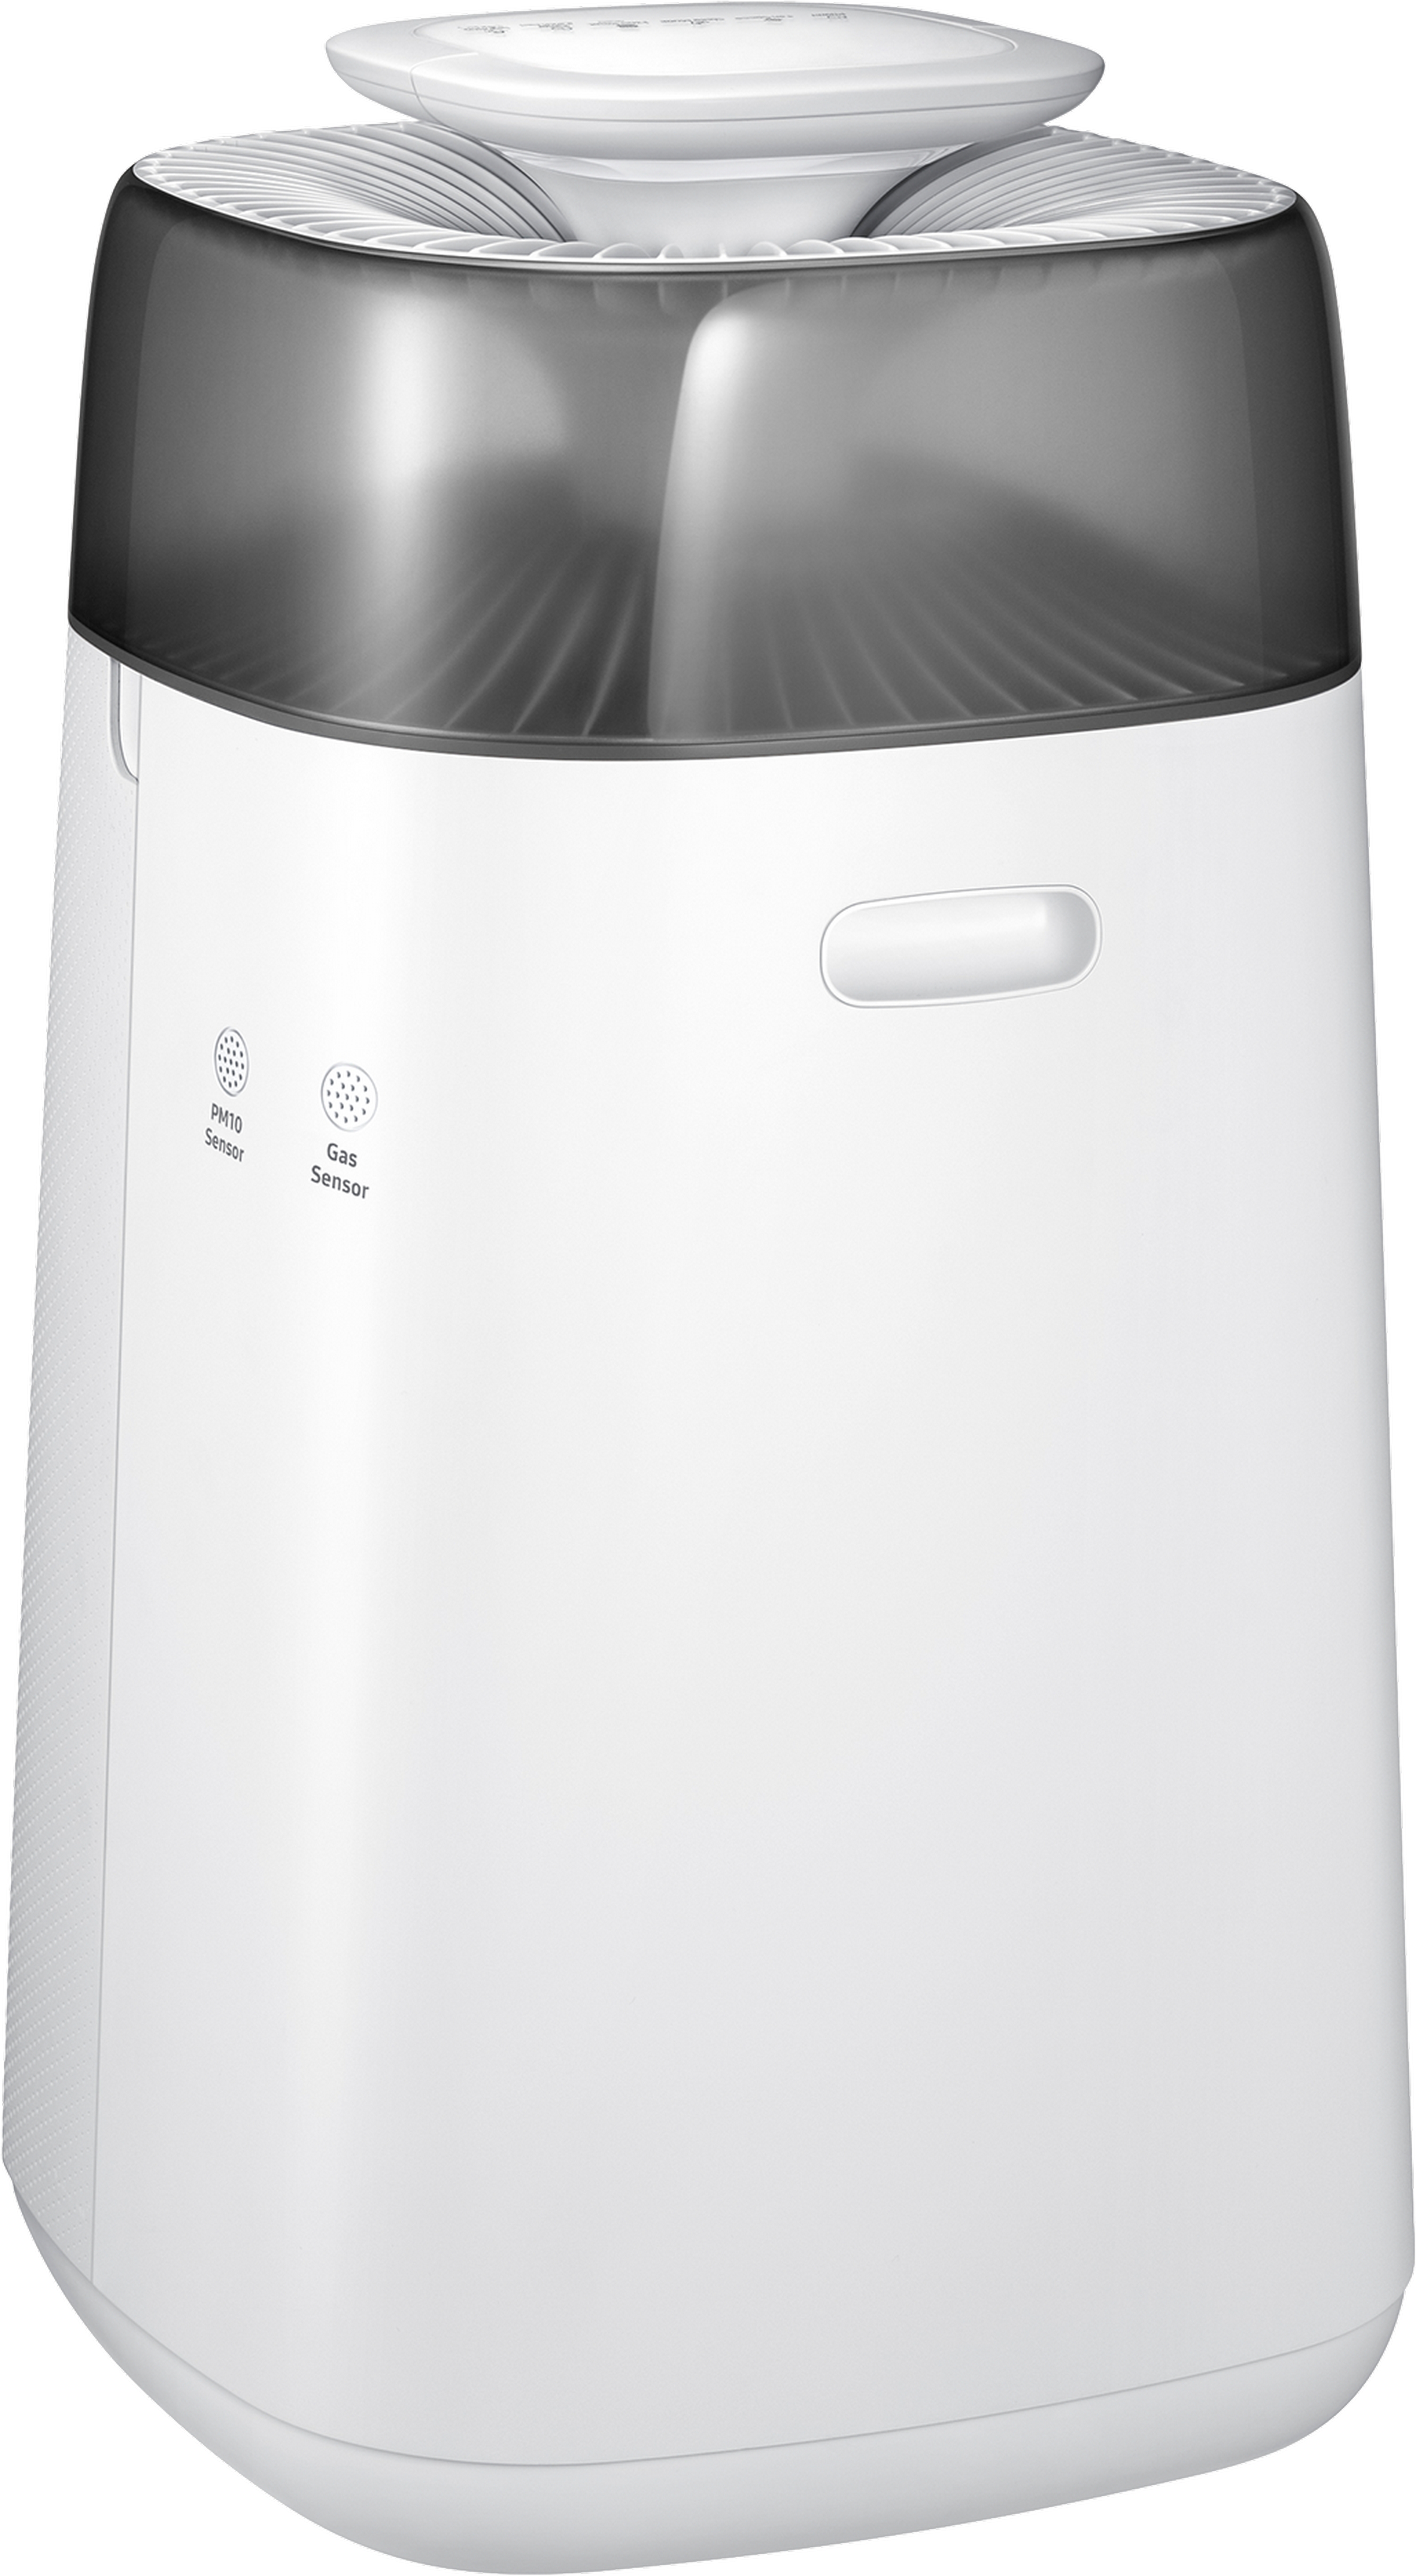 Очищувач повітря Samsung AX40T3030WM/ER огляд - фото 8